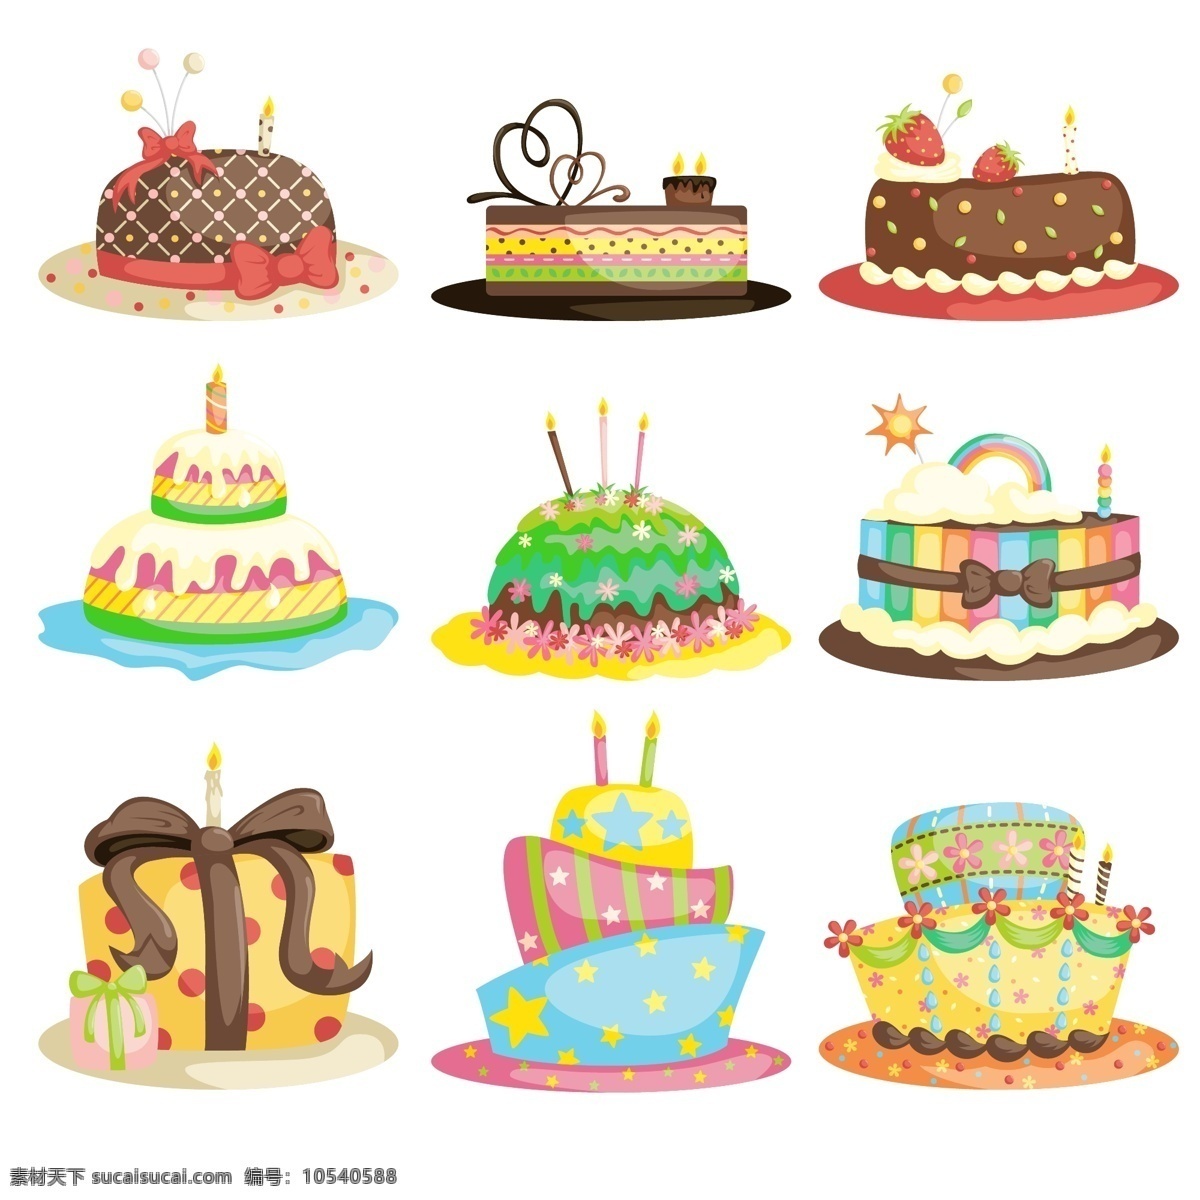 生日 类 装饰 矢量 生日蛋糕 元素 图案 集合 生日类装饰 生日矢量 生日素材 生日元素 彩色 立体 创意 帽子蛋糕